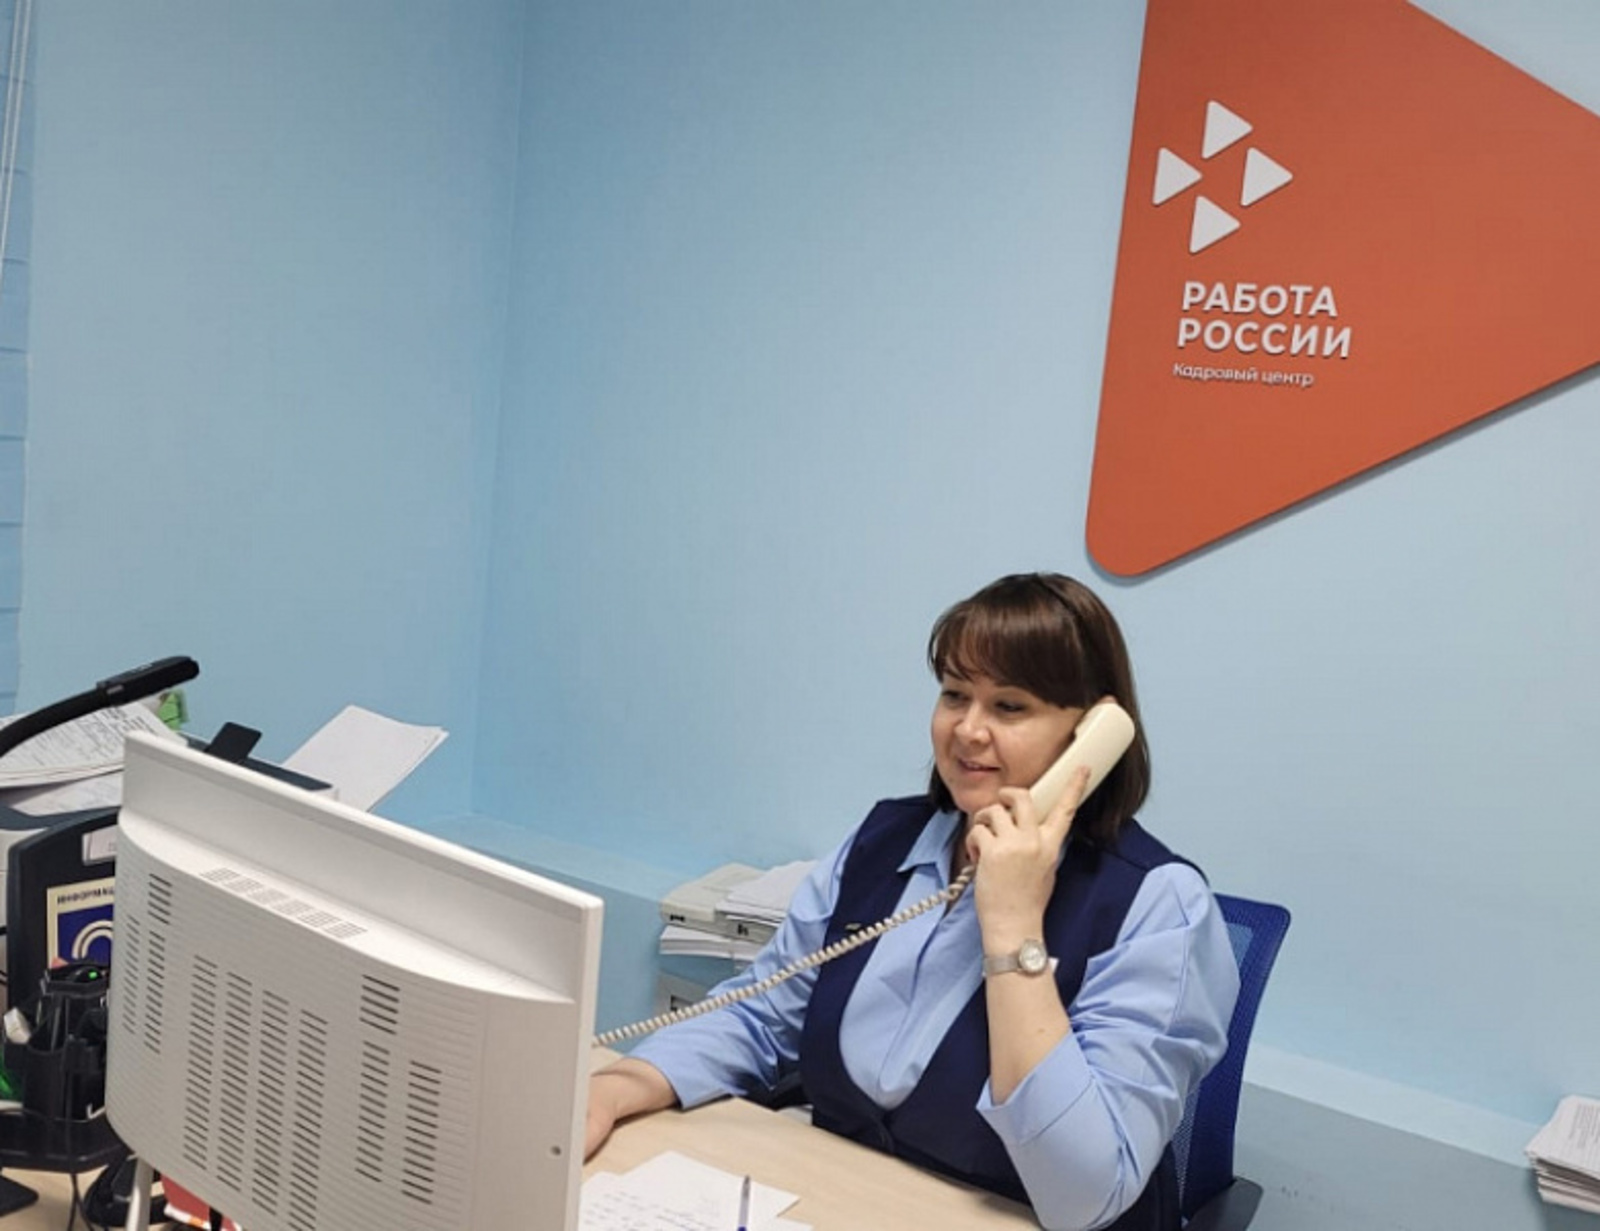 45 тысяч вакансий заявлено работодателями на интерактивном портале службы занятости Башкортостана